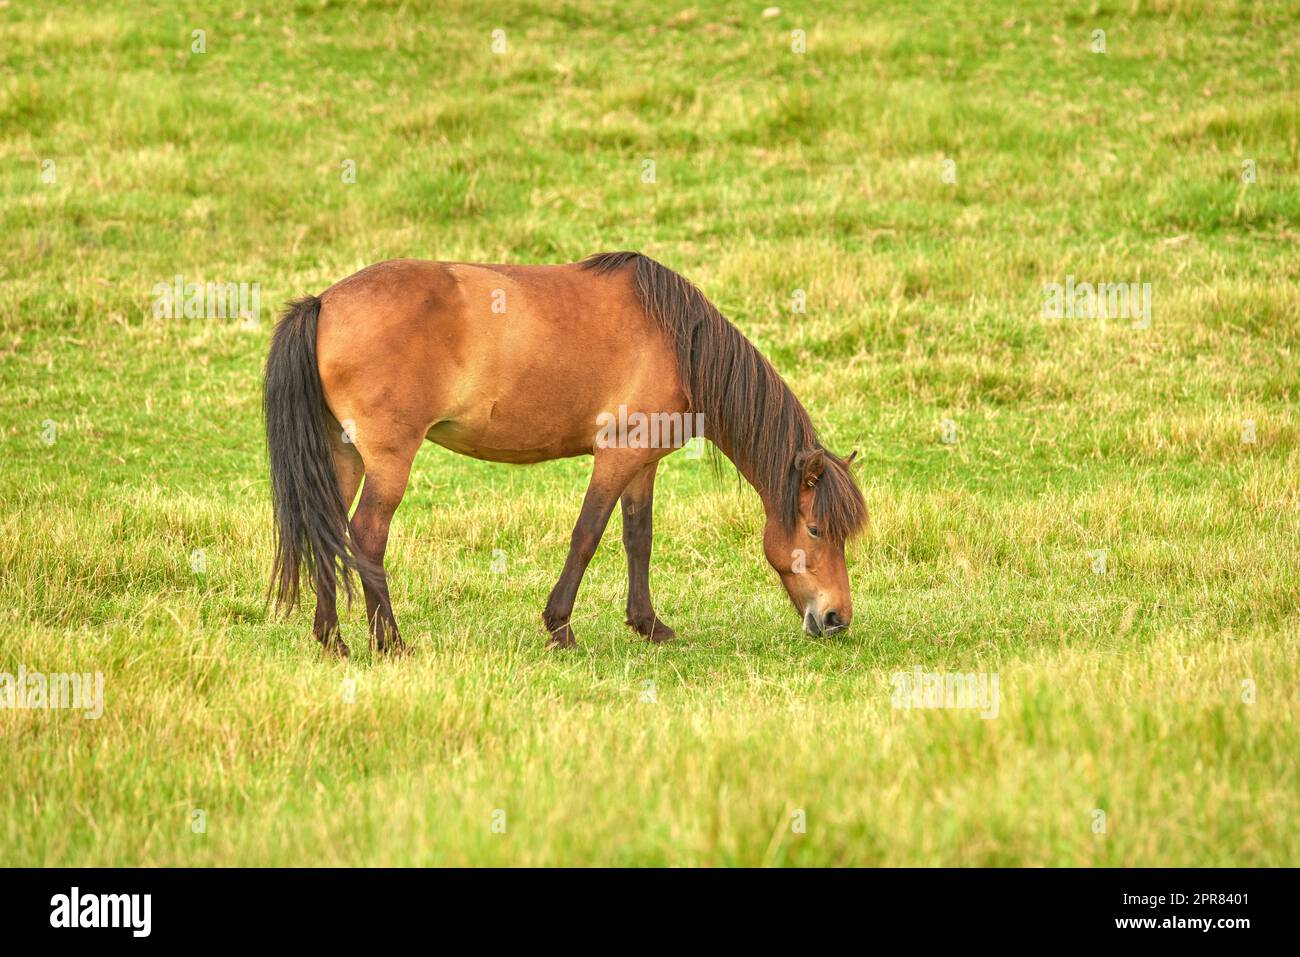 Cavallo bruno che mangia erba in un prato vicino alla campagna. Uno stallone o un pony che pascolano su un campo aperto con pascolo verde primavera. Il bestiame castagno si diverte all'aria aperta in un ranch o in una fattoria di animali Foto Stock